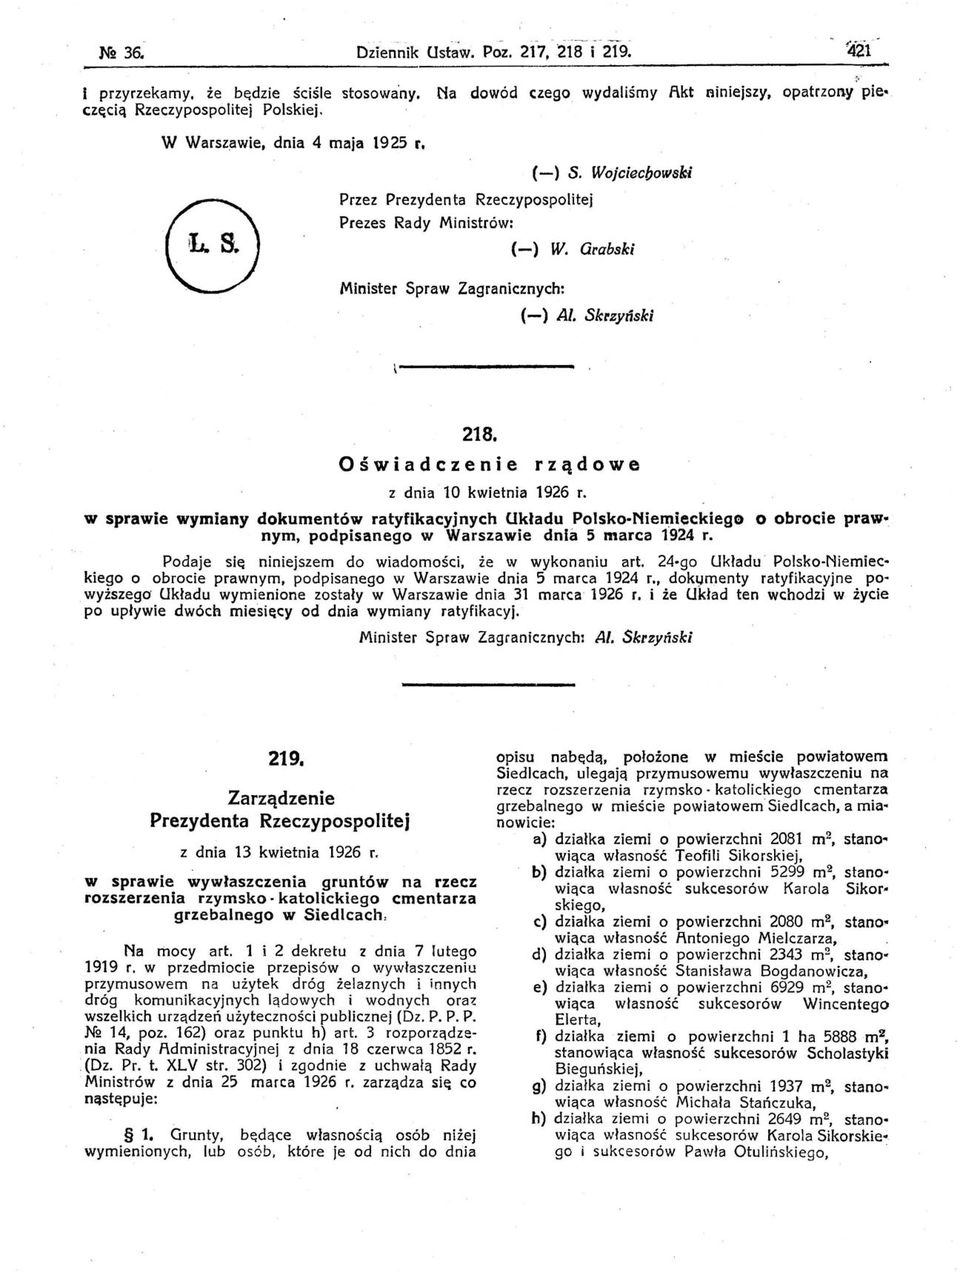 rządowe w sprawie wymiany dokumentów ratyfikacyjnych Układu Polsko-Nien'lieckiego O obrocie praw nym. podpisanego w Warszawie dnia 5 marca 1924 r.